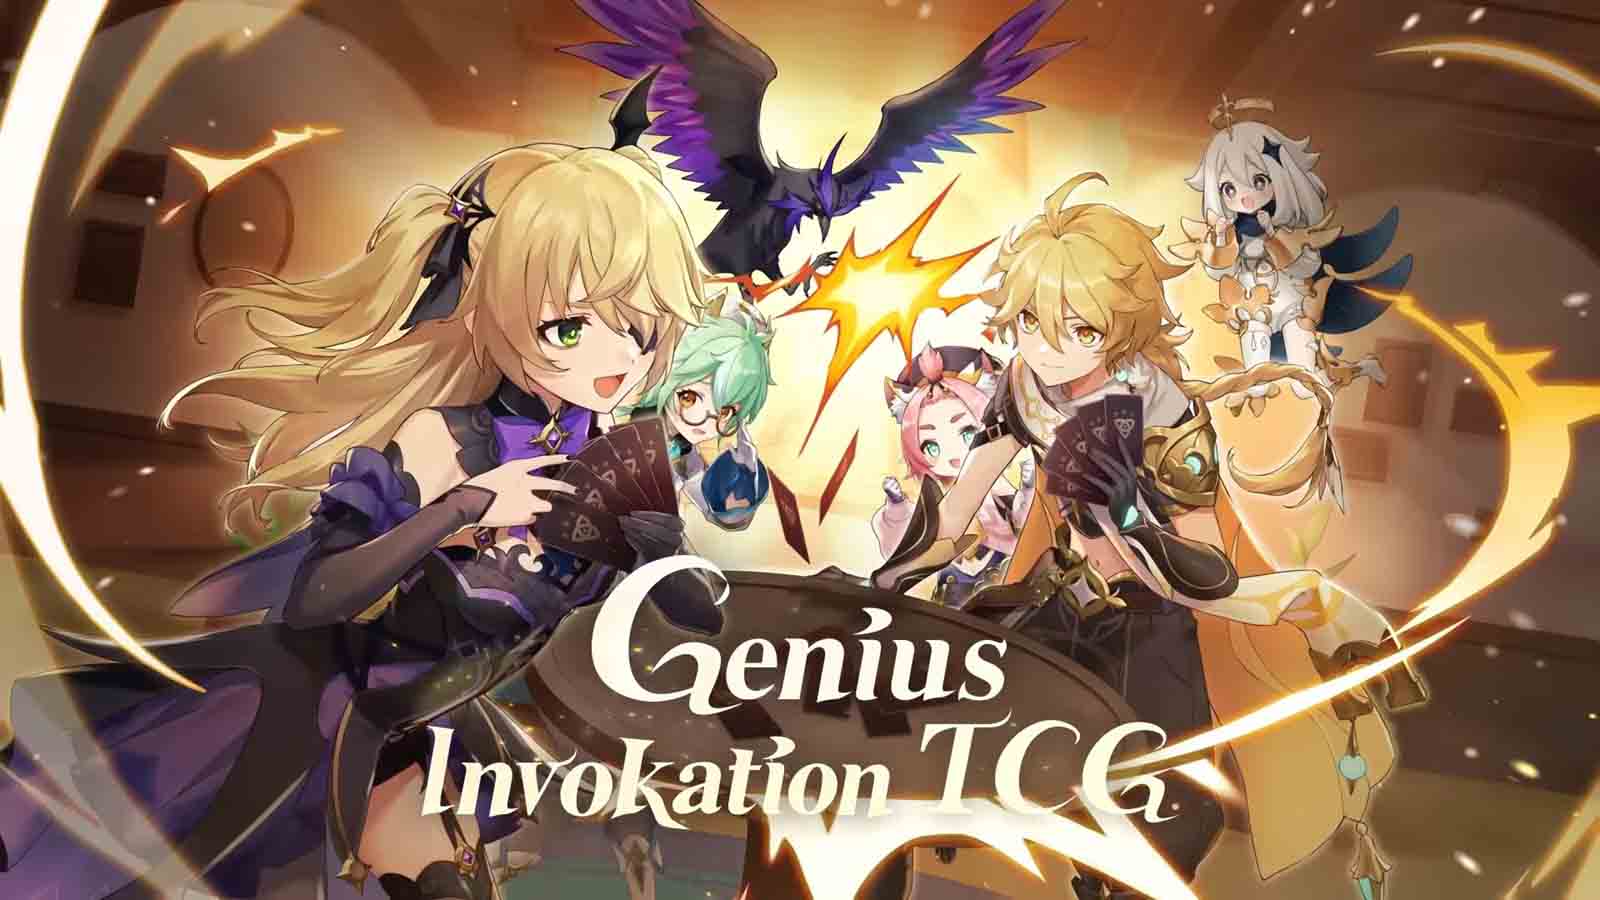 Genius Invokation graphic